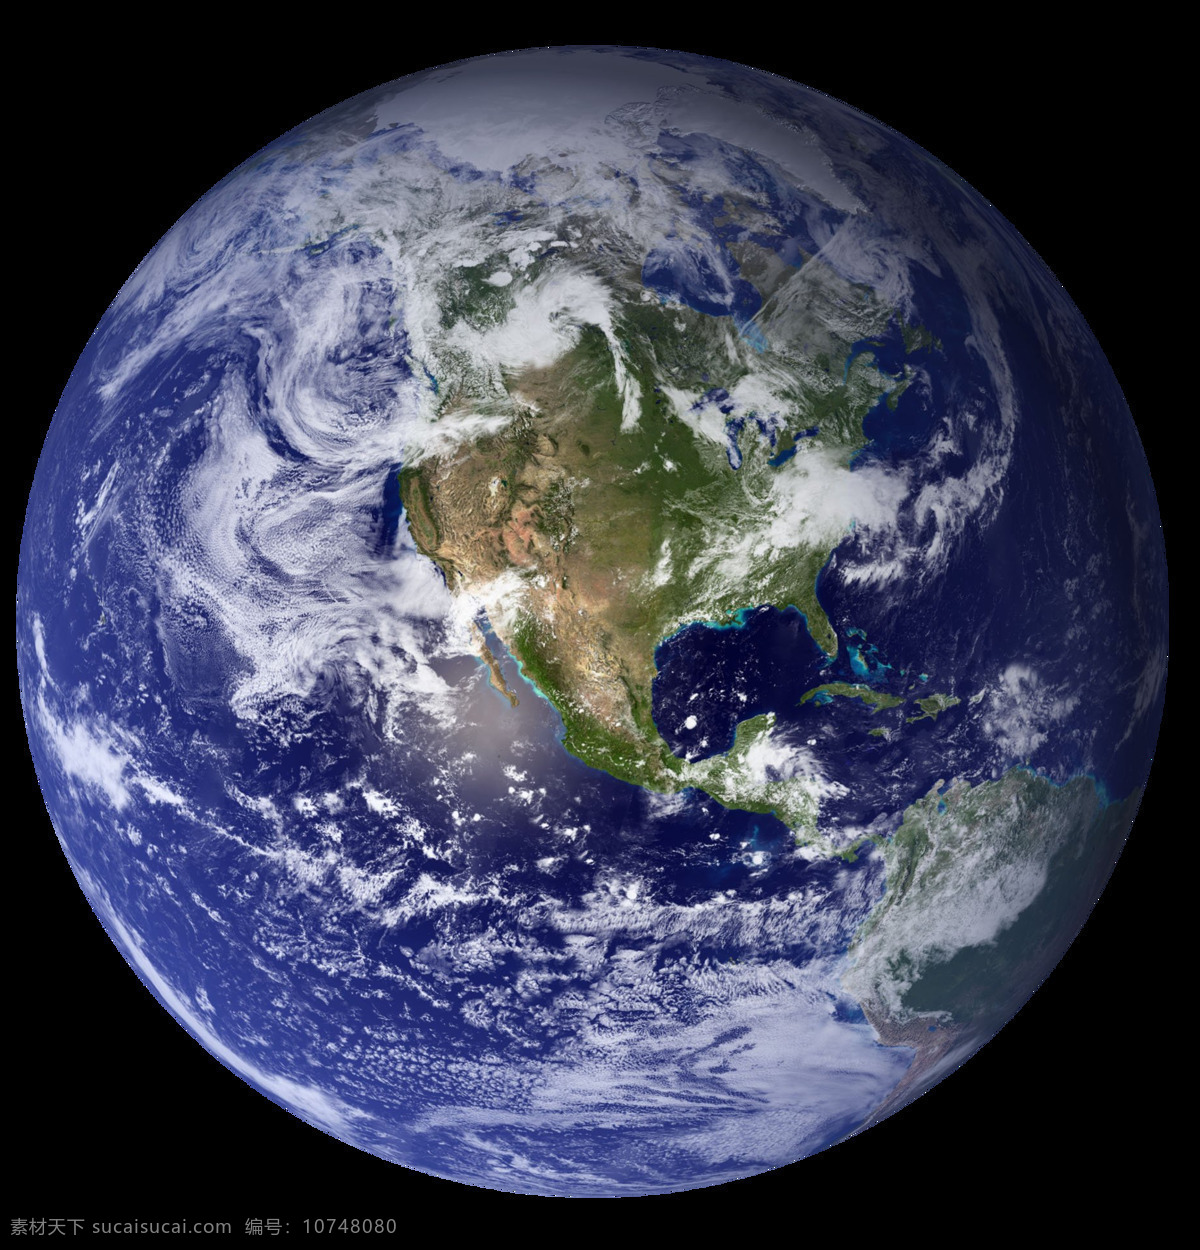 地球图片 地球 地球素材 地球透明背景 地球免抠图 地球贴图 材质贴图 4k贴图 4k材质贴图 4k地球贴图 材质 纹理 贴图 纹理贴图 地球材质 地球纹理 蓝色地球 地球贴图材质 地球图案 服装印花 服装图案 t恤印花 服装印花图 星球 星球贴图 星球纹理 星球材质 地球图 星系图 创意图片 壁纸